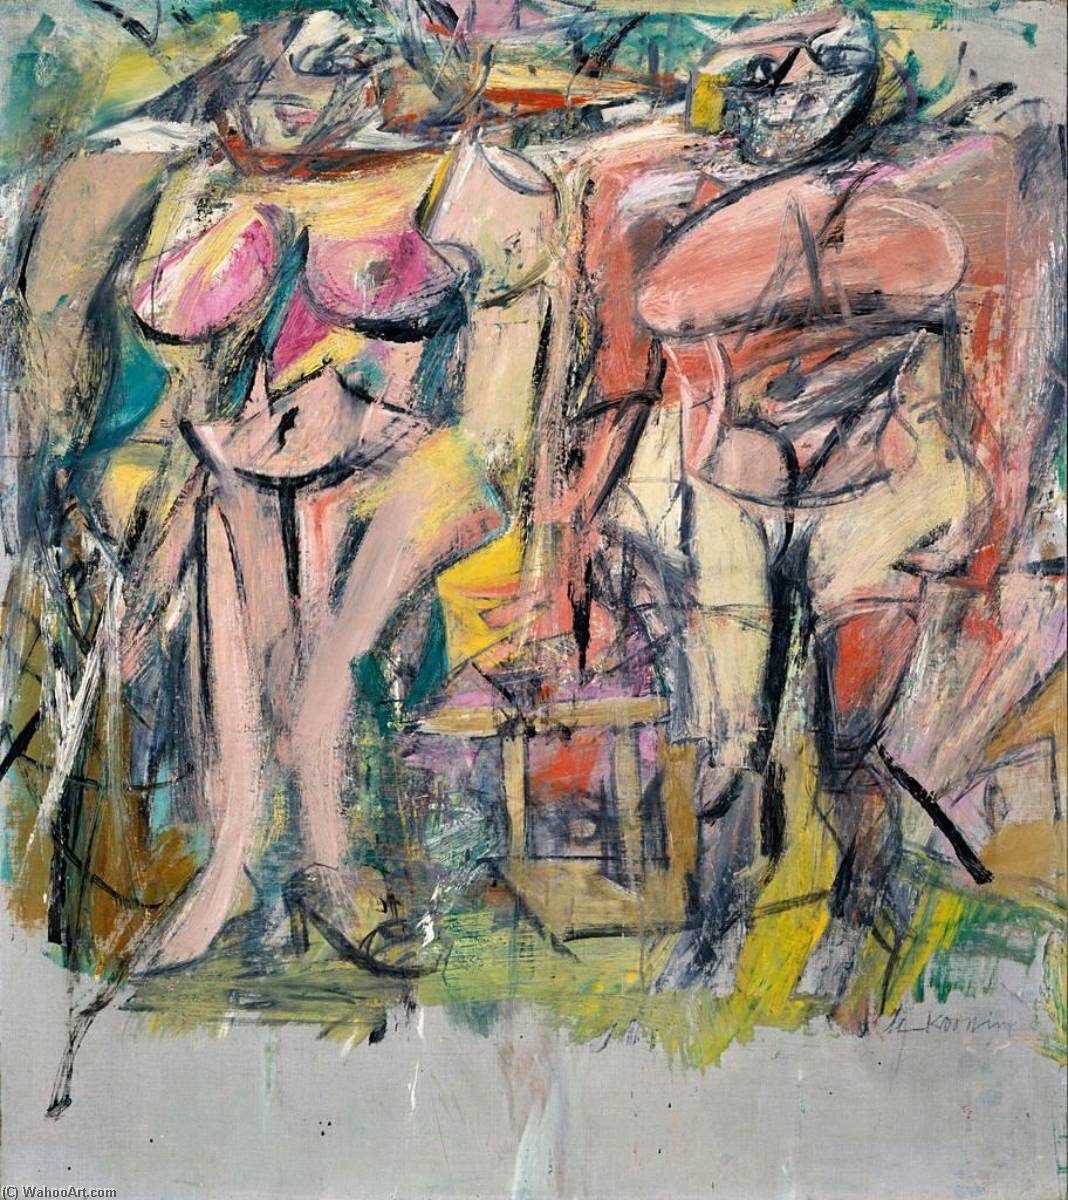 Kauf Museum Kunstreproduktionen Zwei Frauen im Land, 1954 von Willem De Kooning (Inspiriert von) (1904-1997, Netherlands) | ArtsDot.com